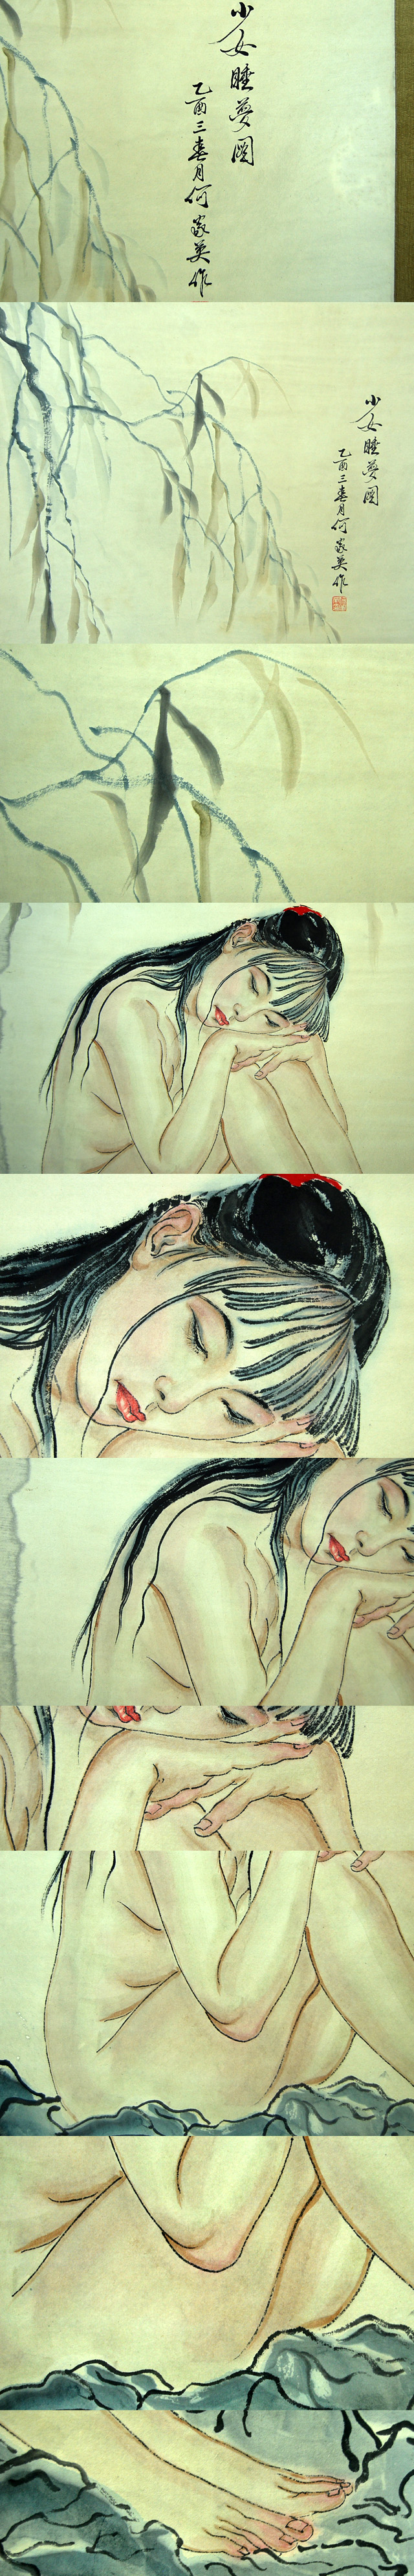 新規購入L20677 中国 家英 作 「少女睡夢図」 美人画 裸婦 人物 掛軸 紙本 彩色肉筆 大判 中国美術画 掛軸